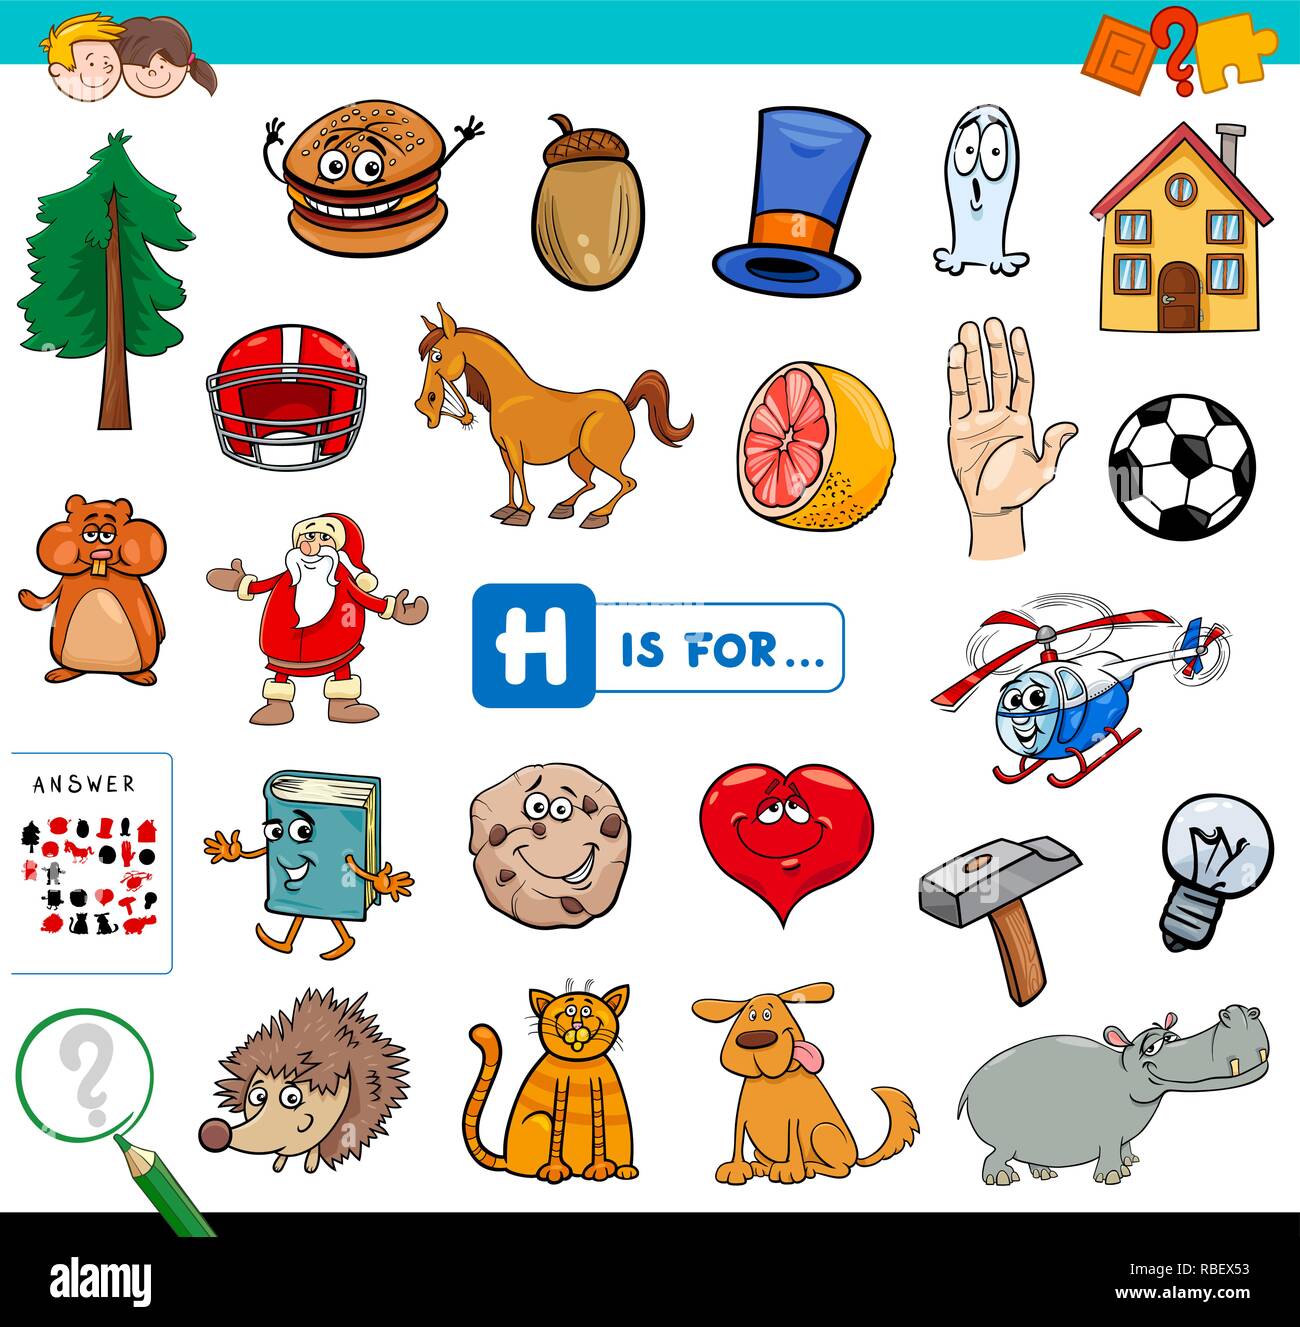 Ilustración de dibujos animados de encontrar la imagen que empiezan con la  letra H del libro de juegos educativos para niños Imagen Vector de stock -  Alamy